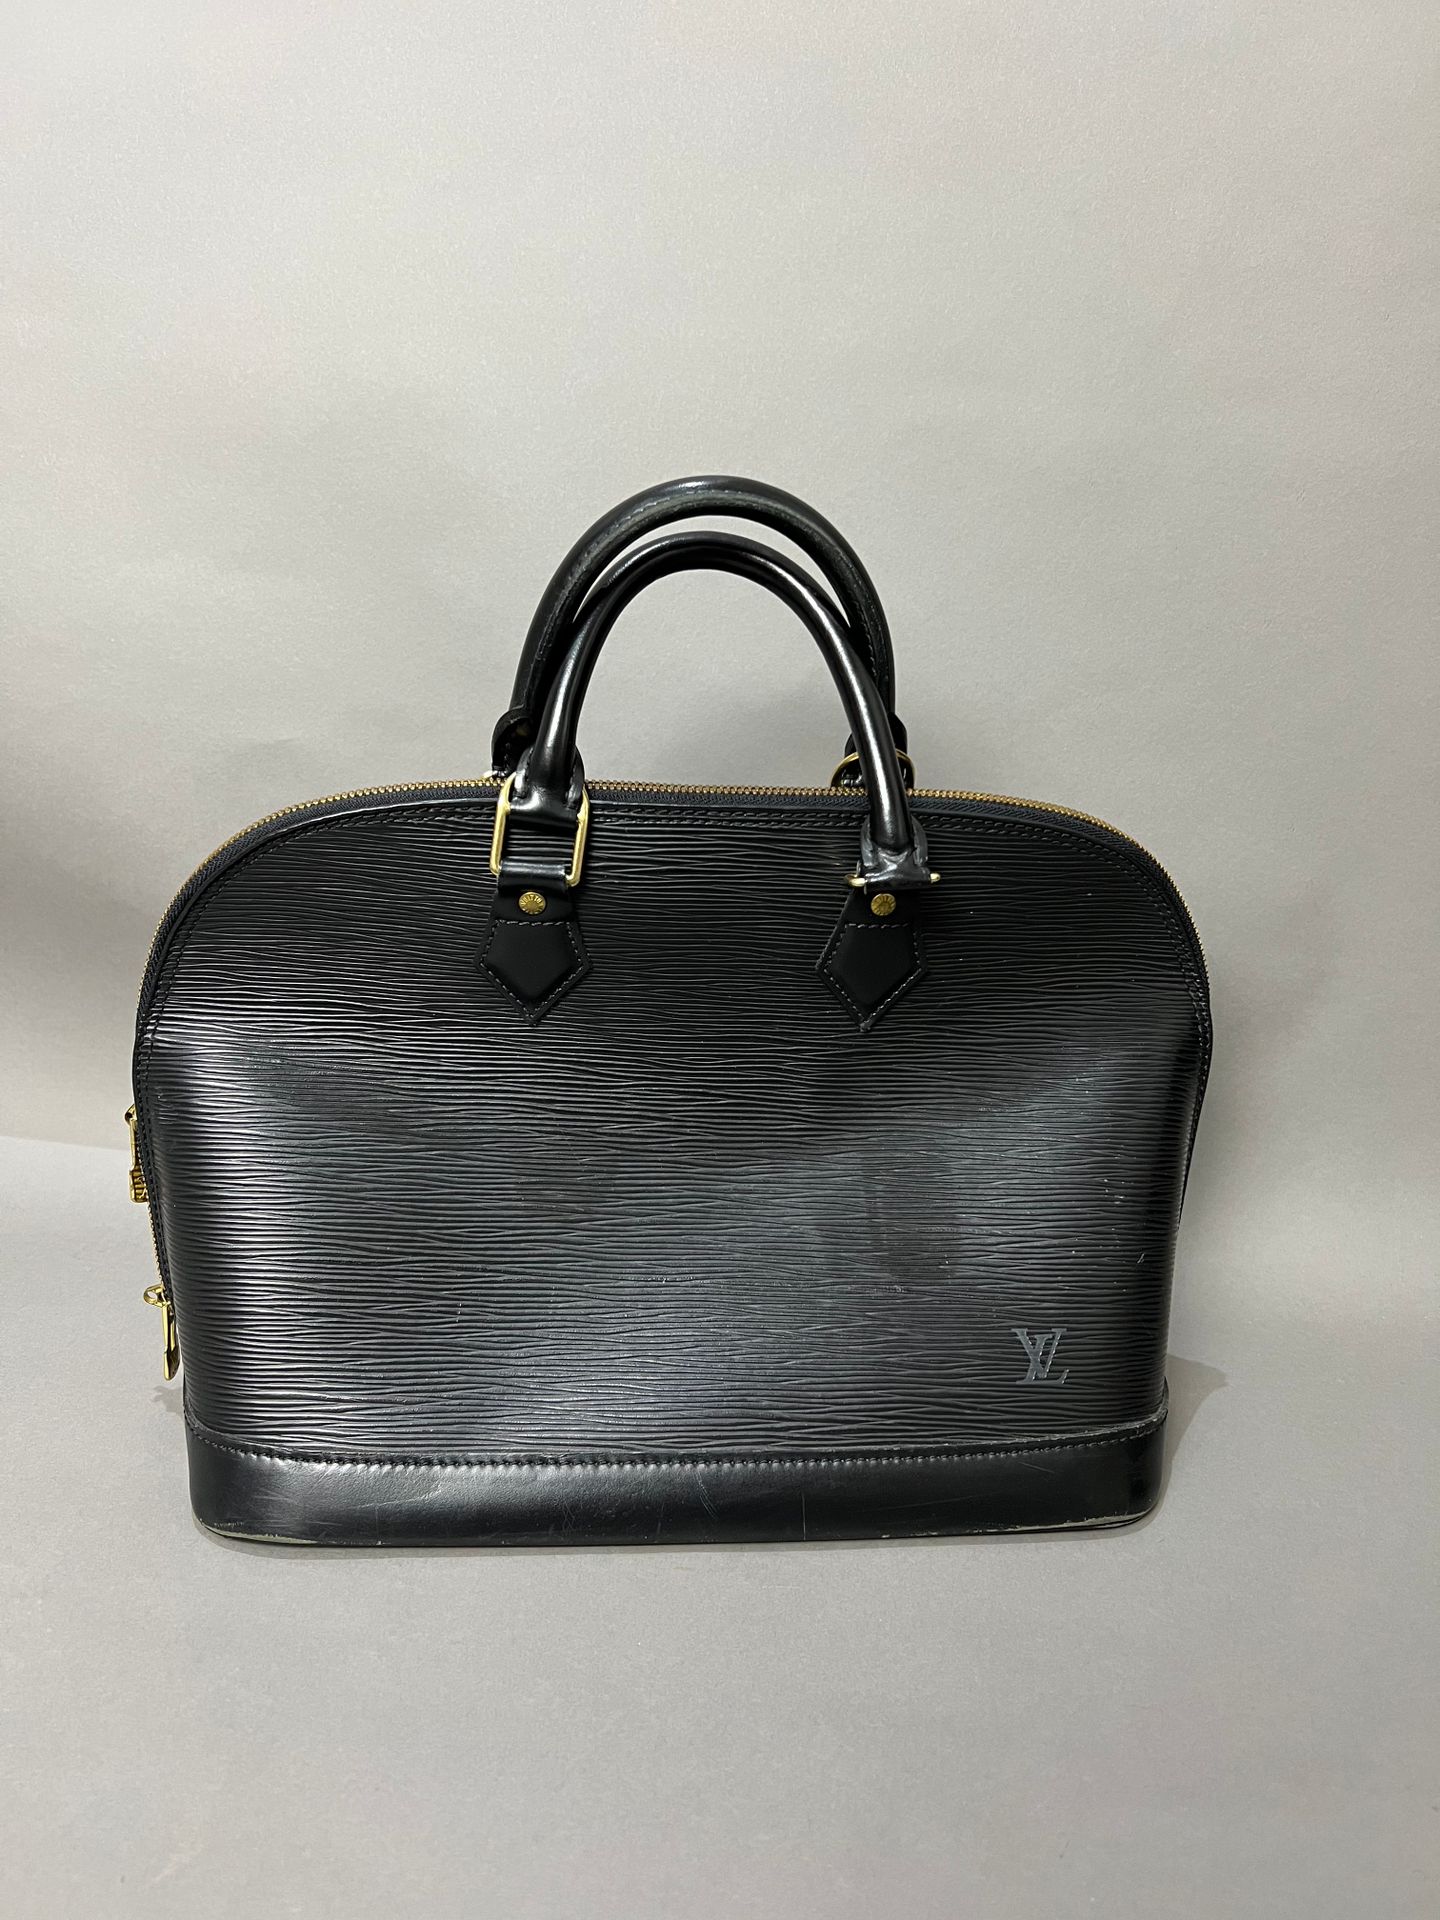 LOUIS VUITTON. Black epi leather bag, Alma model, gild…